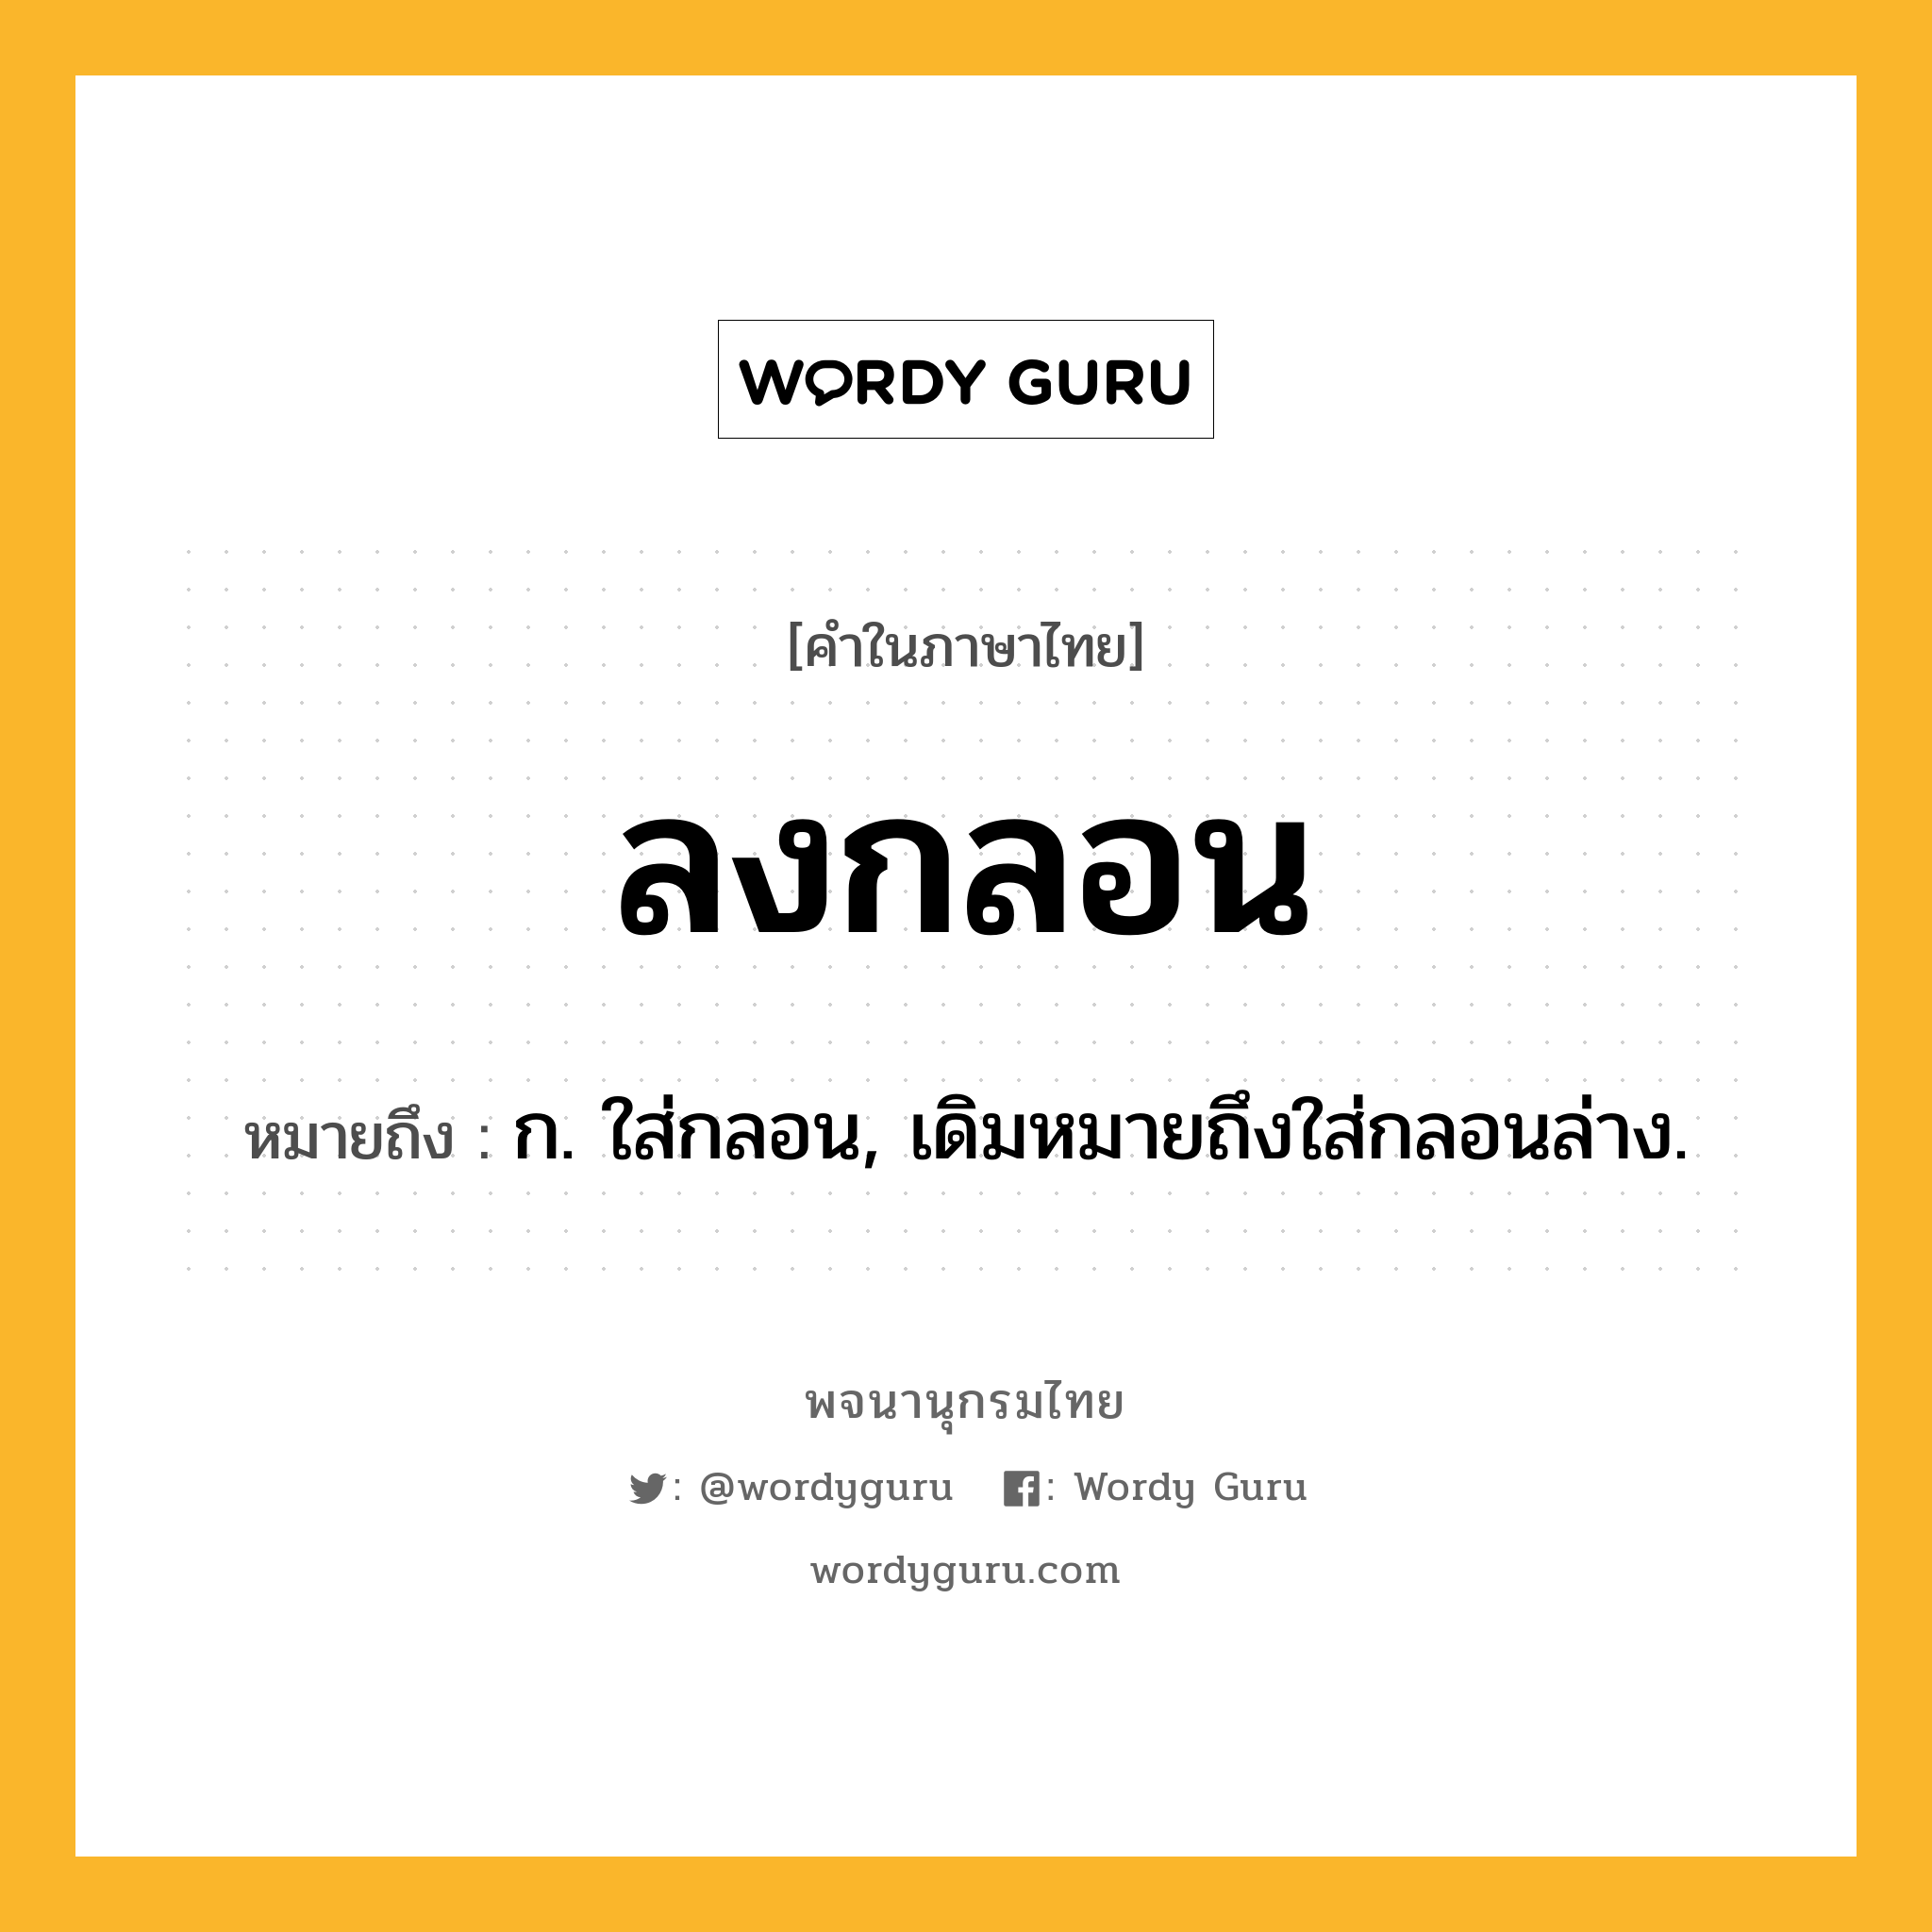 ลงกลอน หมายถึงอะไร?, คำในภาษาไทย ลงกลอน หมายถึง ก. ใส่กลอน, เดิมหมายถึงใส่กลอนล่าง.